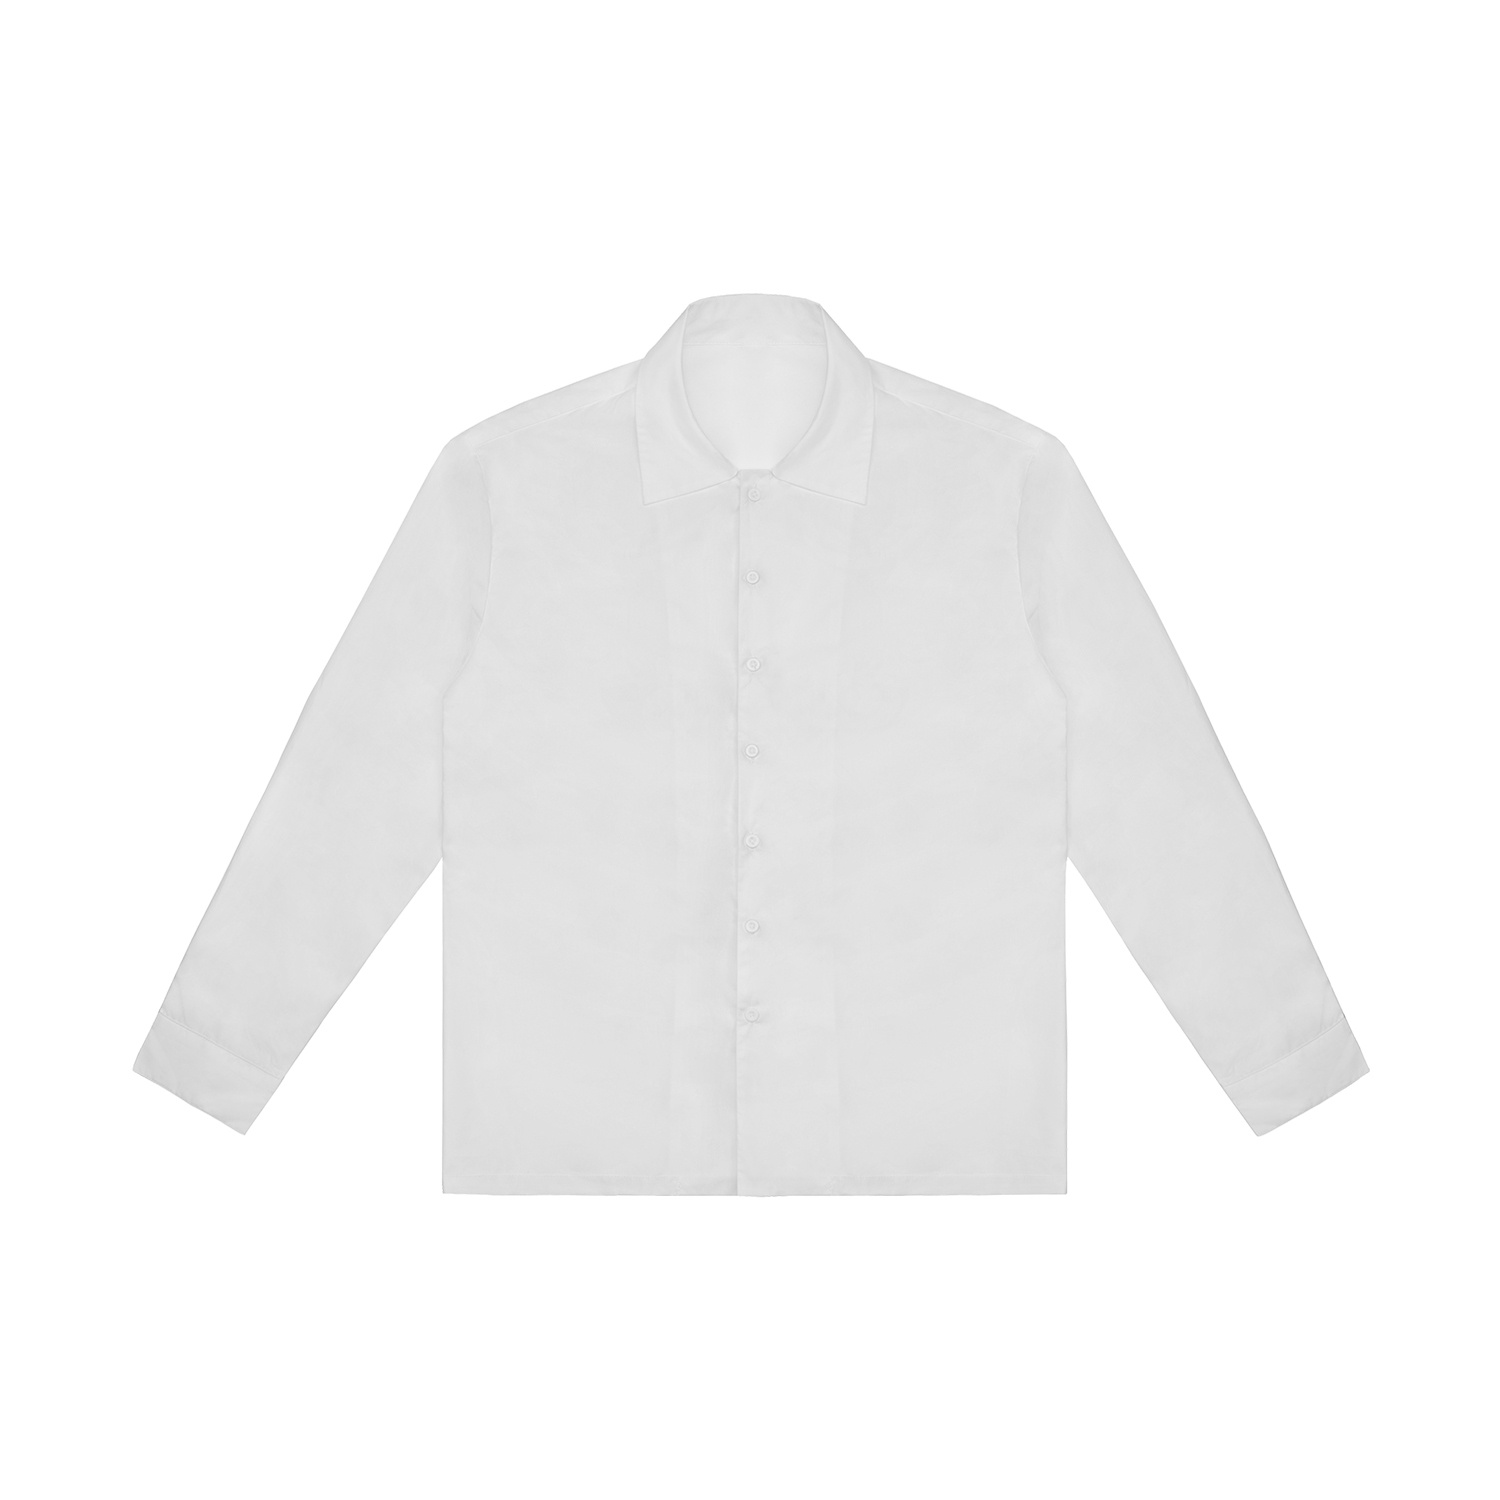 All-Over Print Men's Classic Long Sleeve Shirt | HugePOD